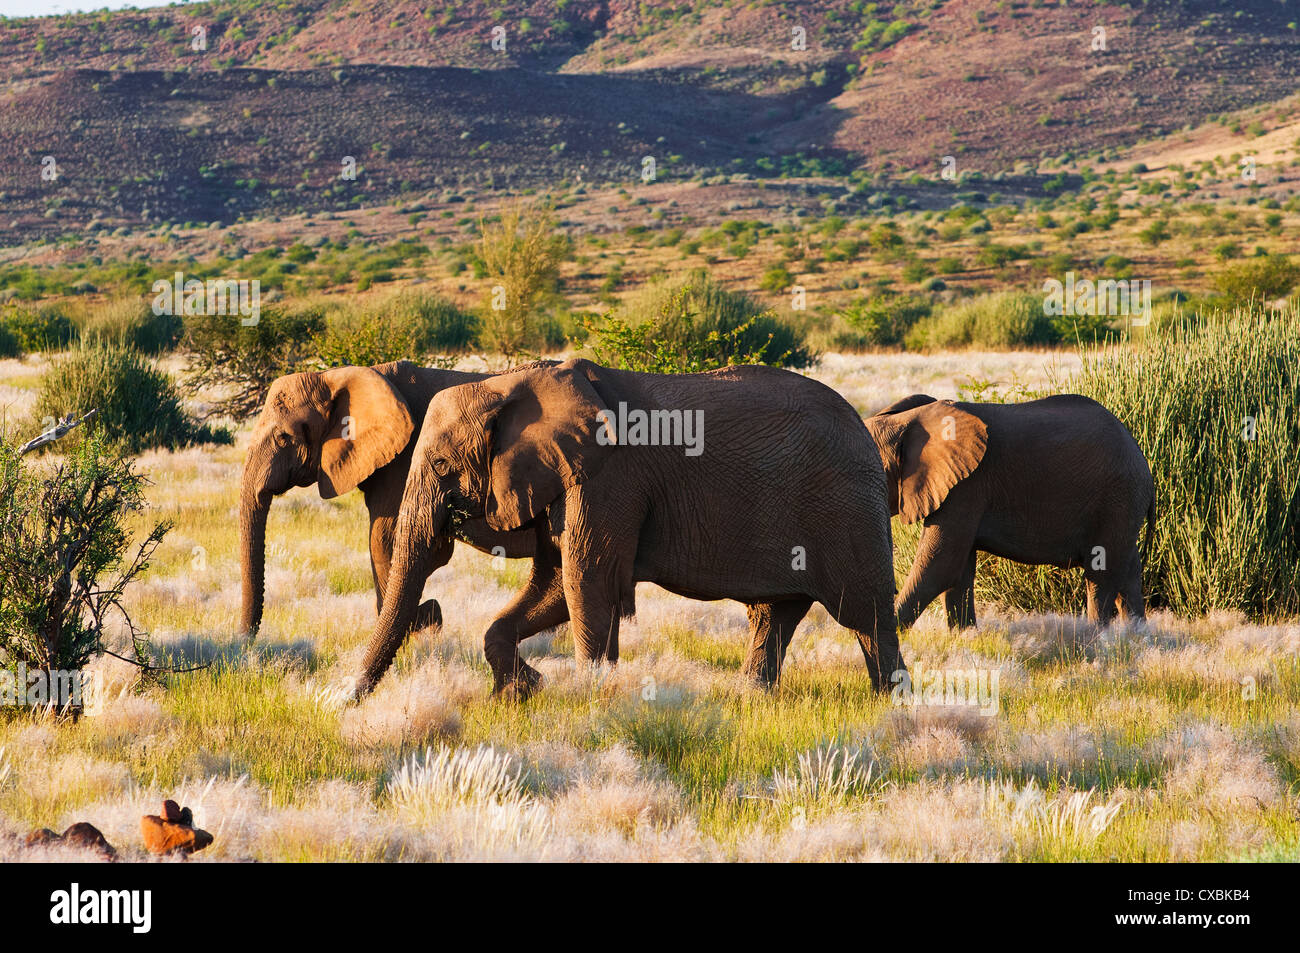 L'éléphant africain (Loxodonta africana), Damaraland, région de Kunene, Namibie, Afrique Banque D'Images